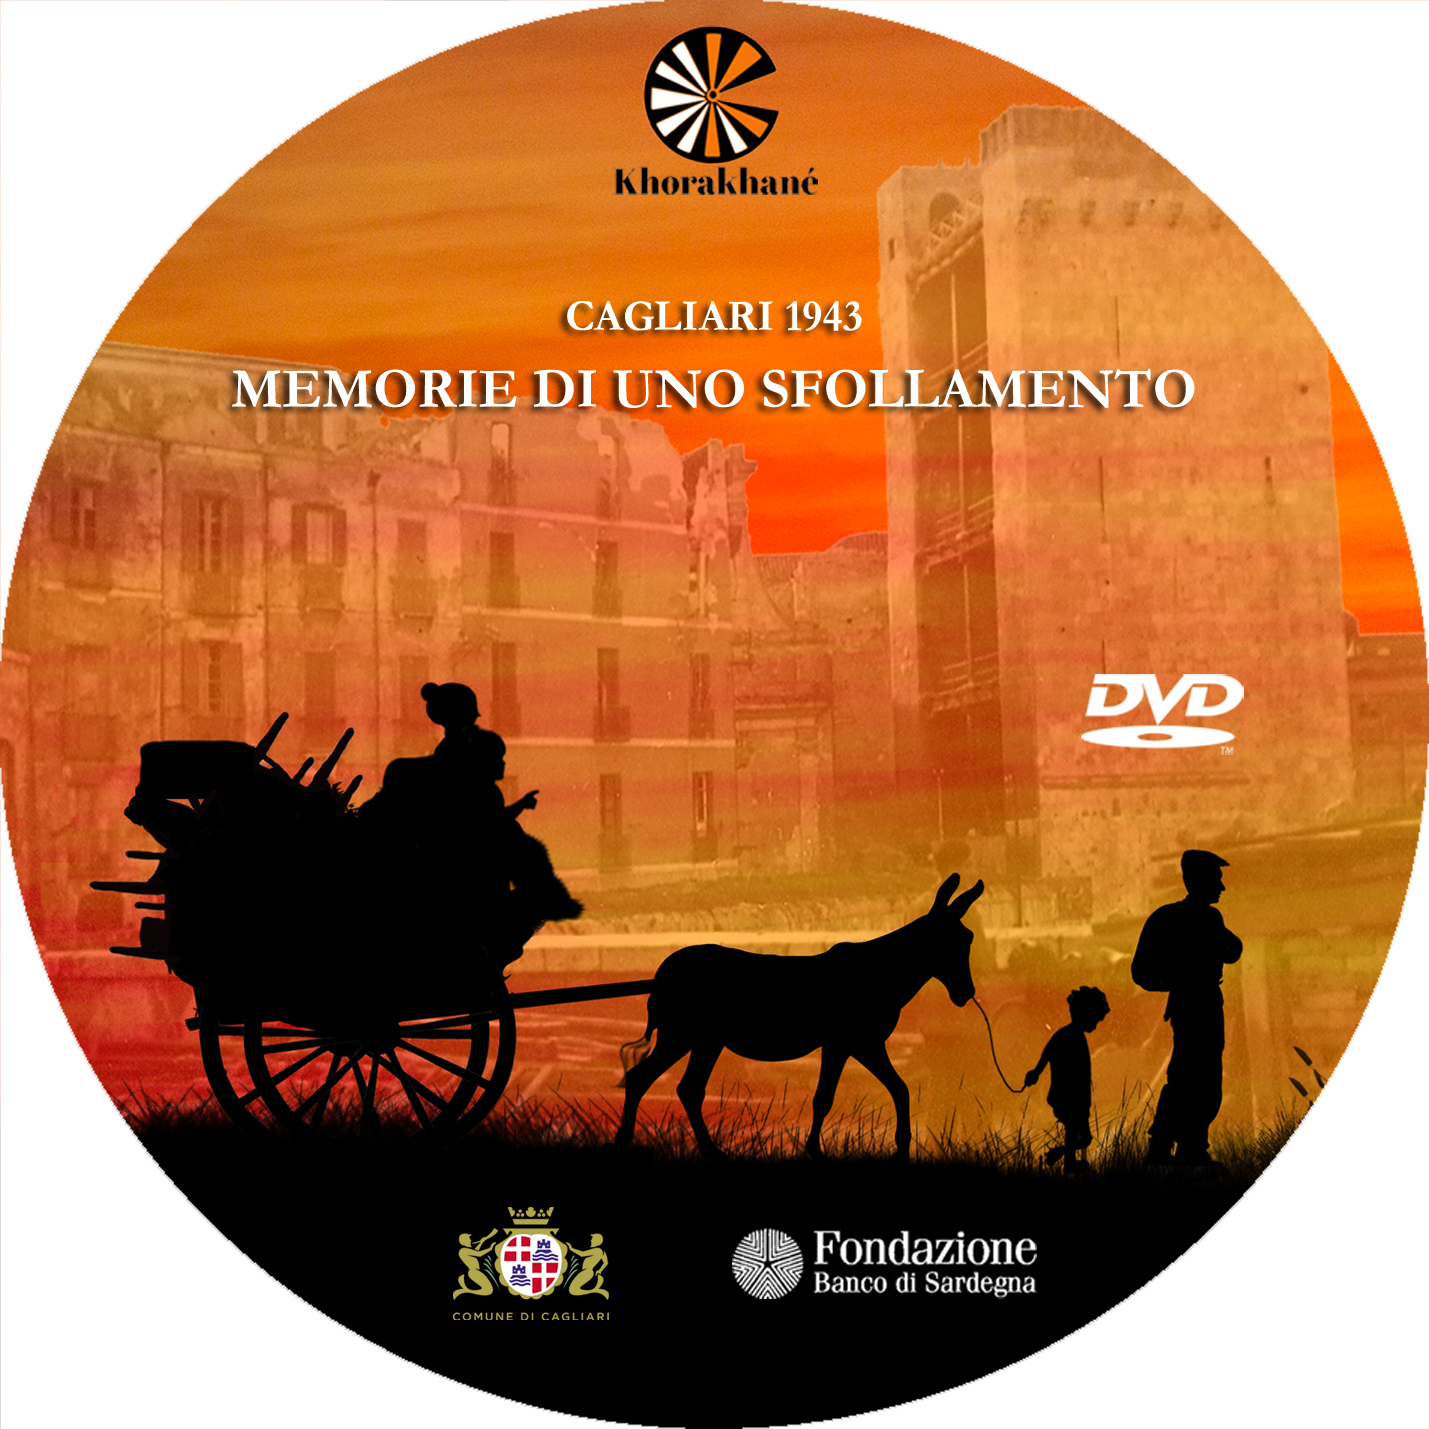 Domani venerdì 10 giugno 2016, presso la Mediateca del Mediterraneo di Cagliari, verrà presentato il documentario dal titolo Cagliari 1943. Memorie di uno sfollamento, che ricostruisce l’epico spopolamento della città e la dispersione dei suoi abitanti verso la campagna.